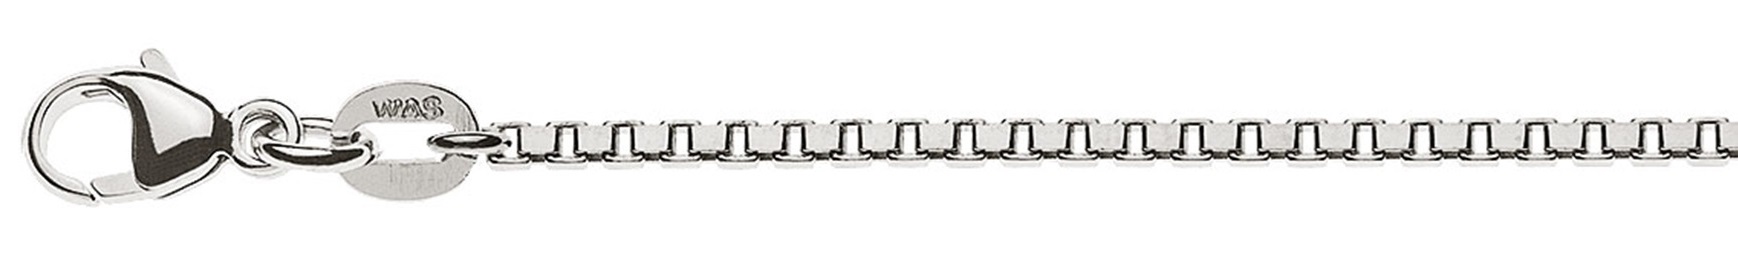 AURONOS Prestige Halskette Weissgold 18K Venezianerkette diamantiert 50cm 1.6mm